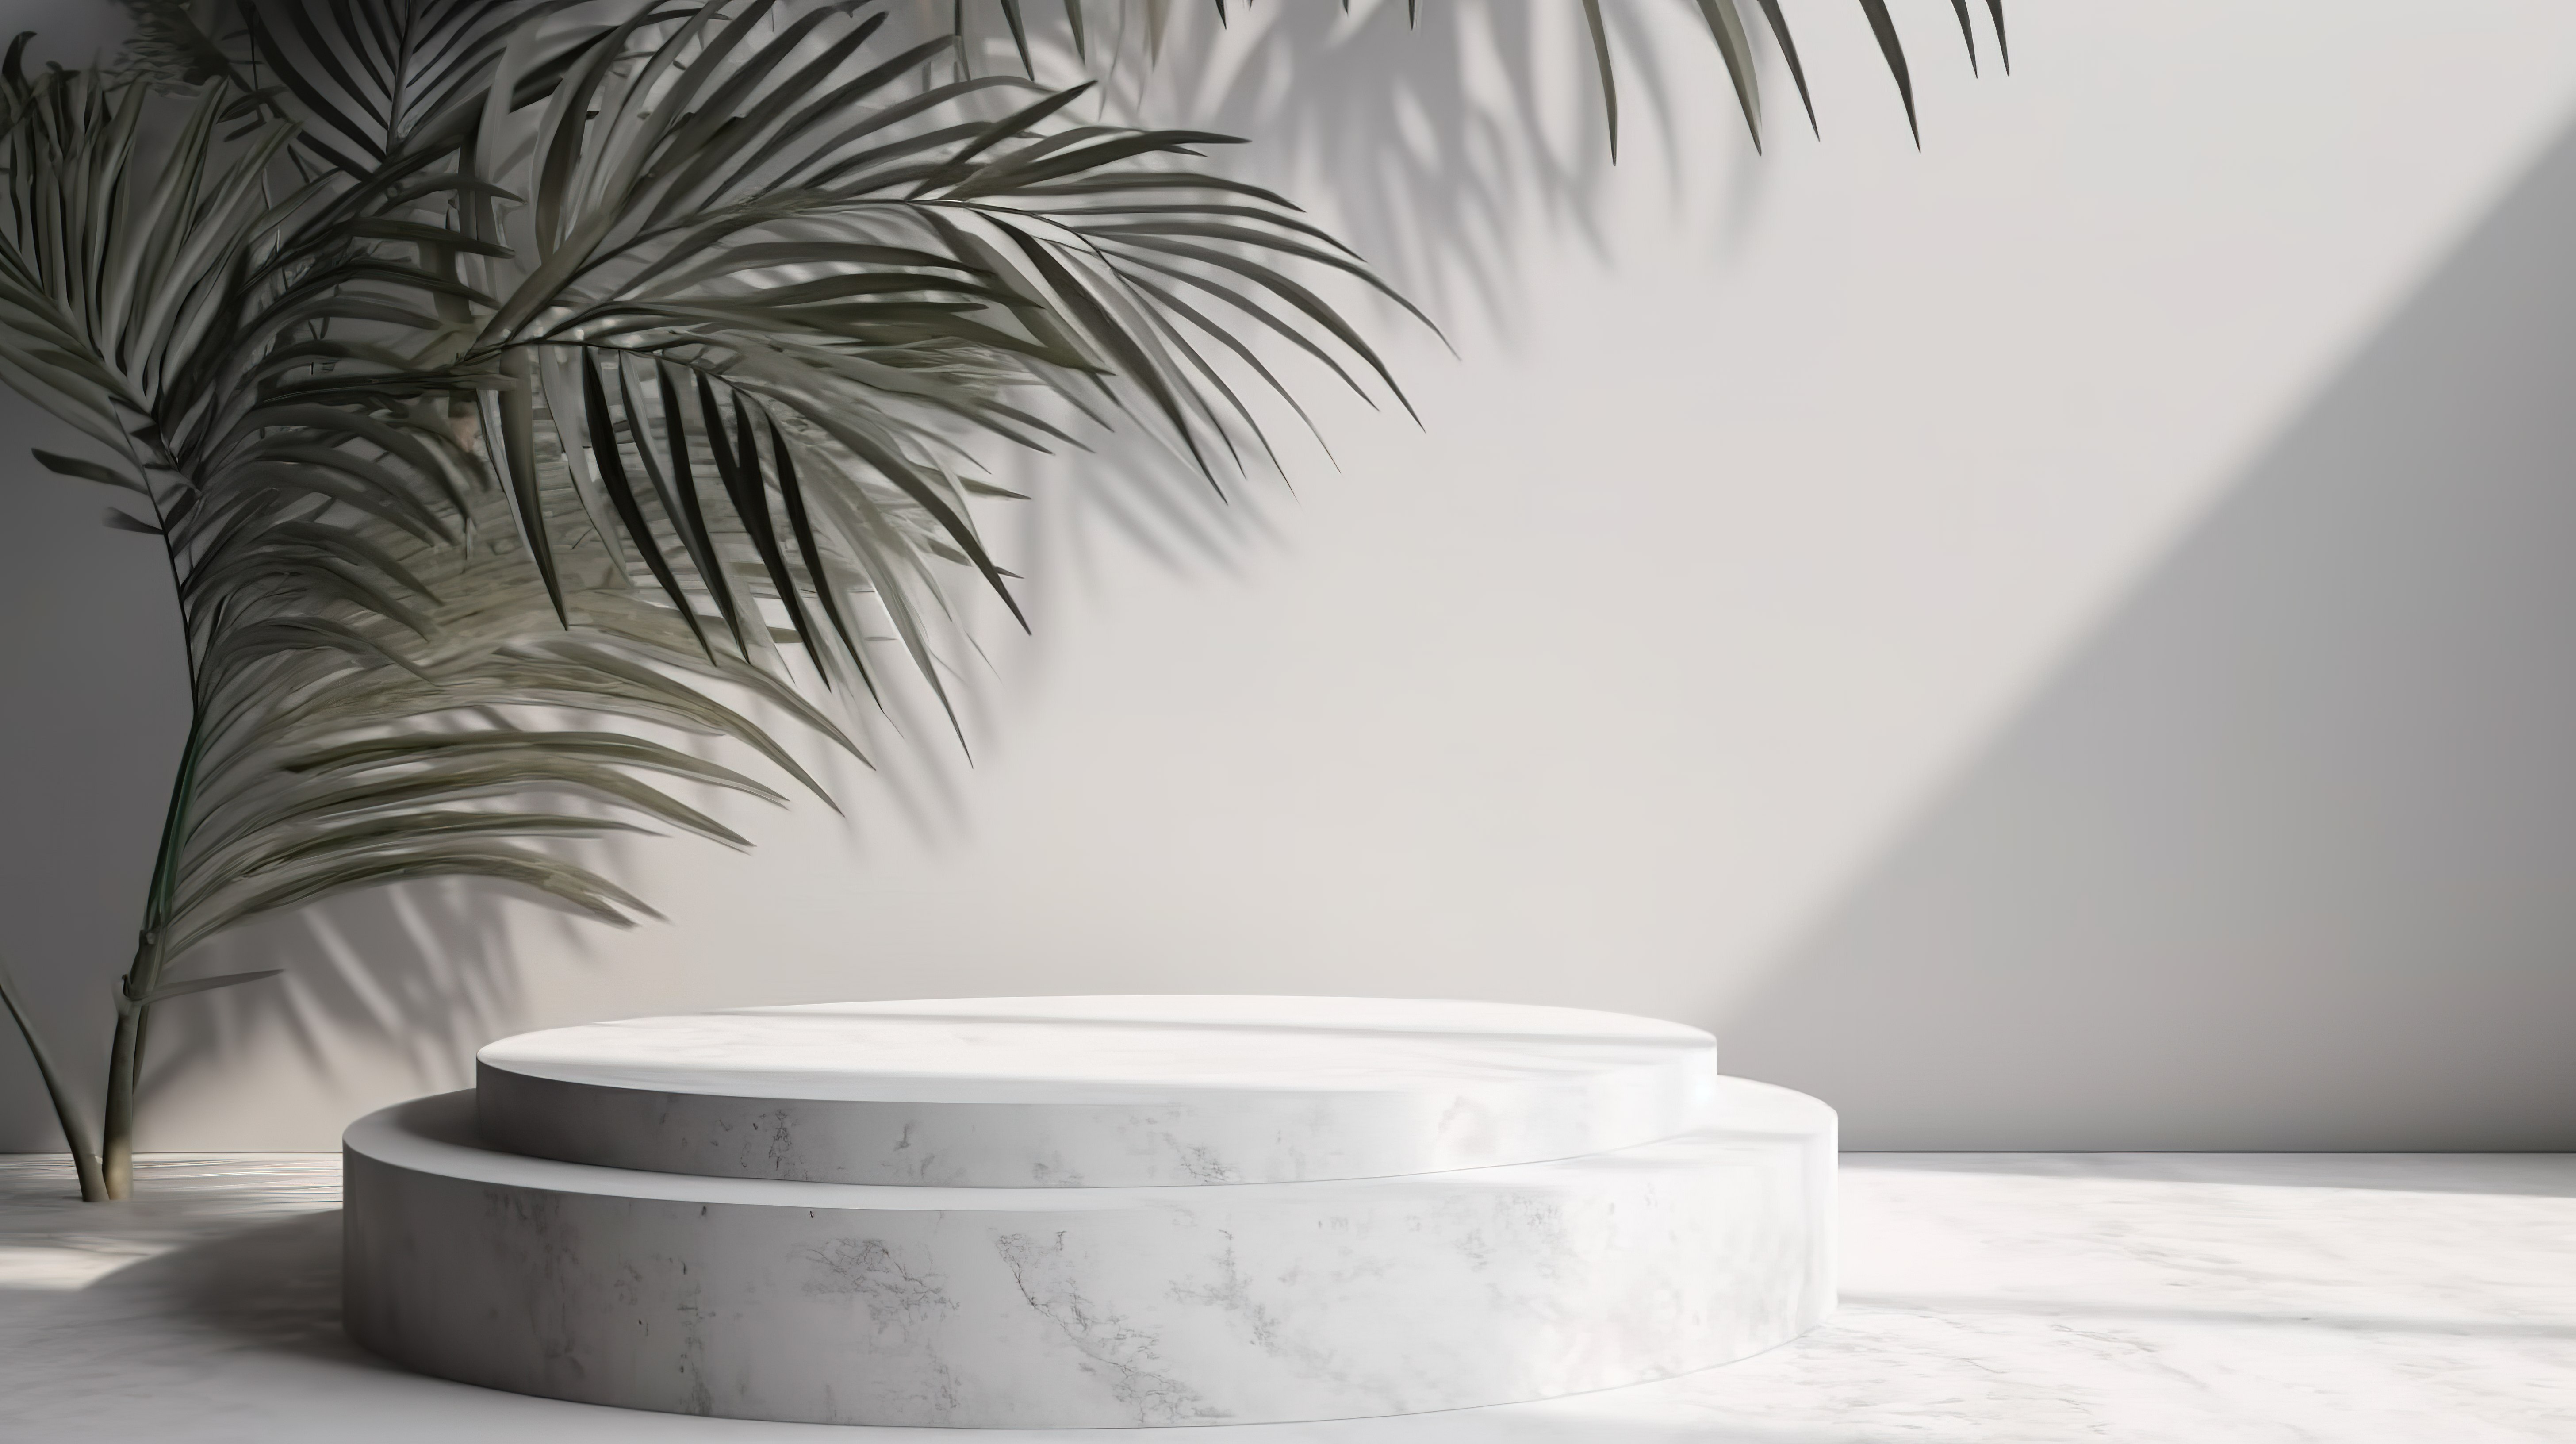 产品展示台 3D 渲染白色石材与混凝土墙和棕榈叶阴影图片